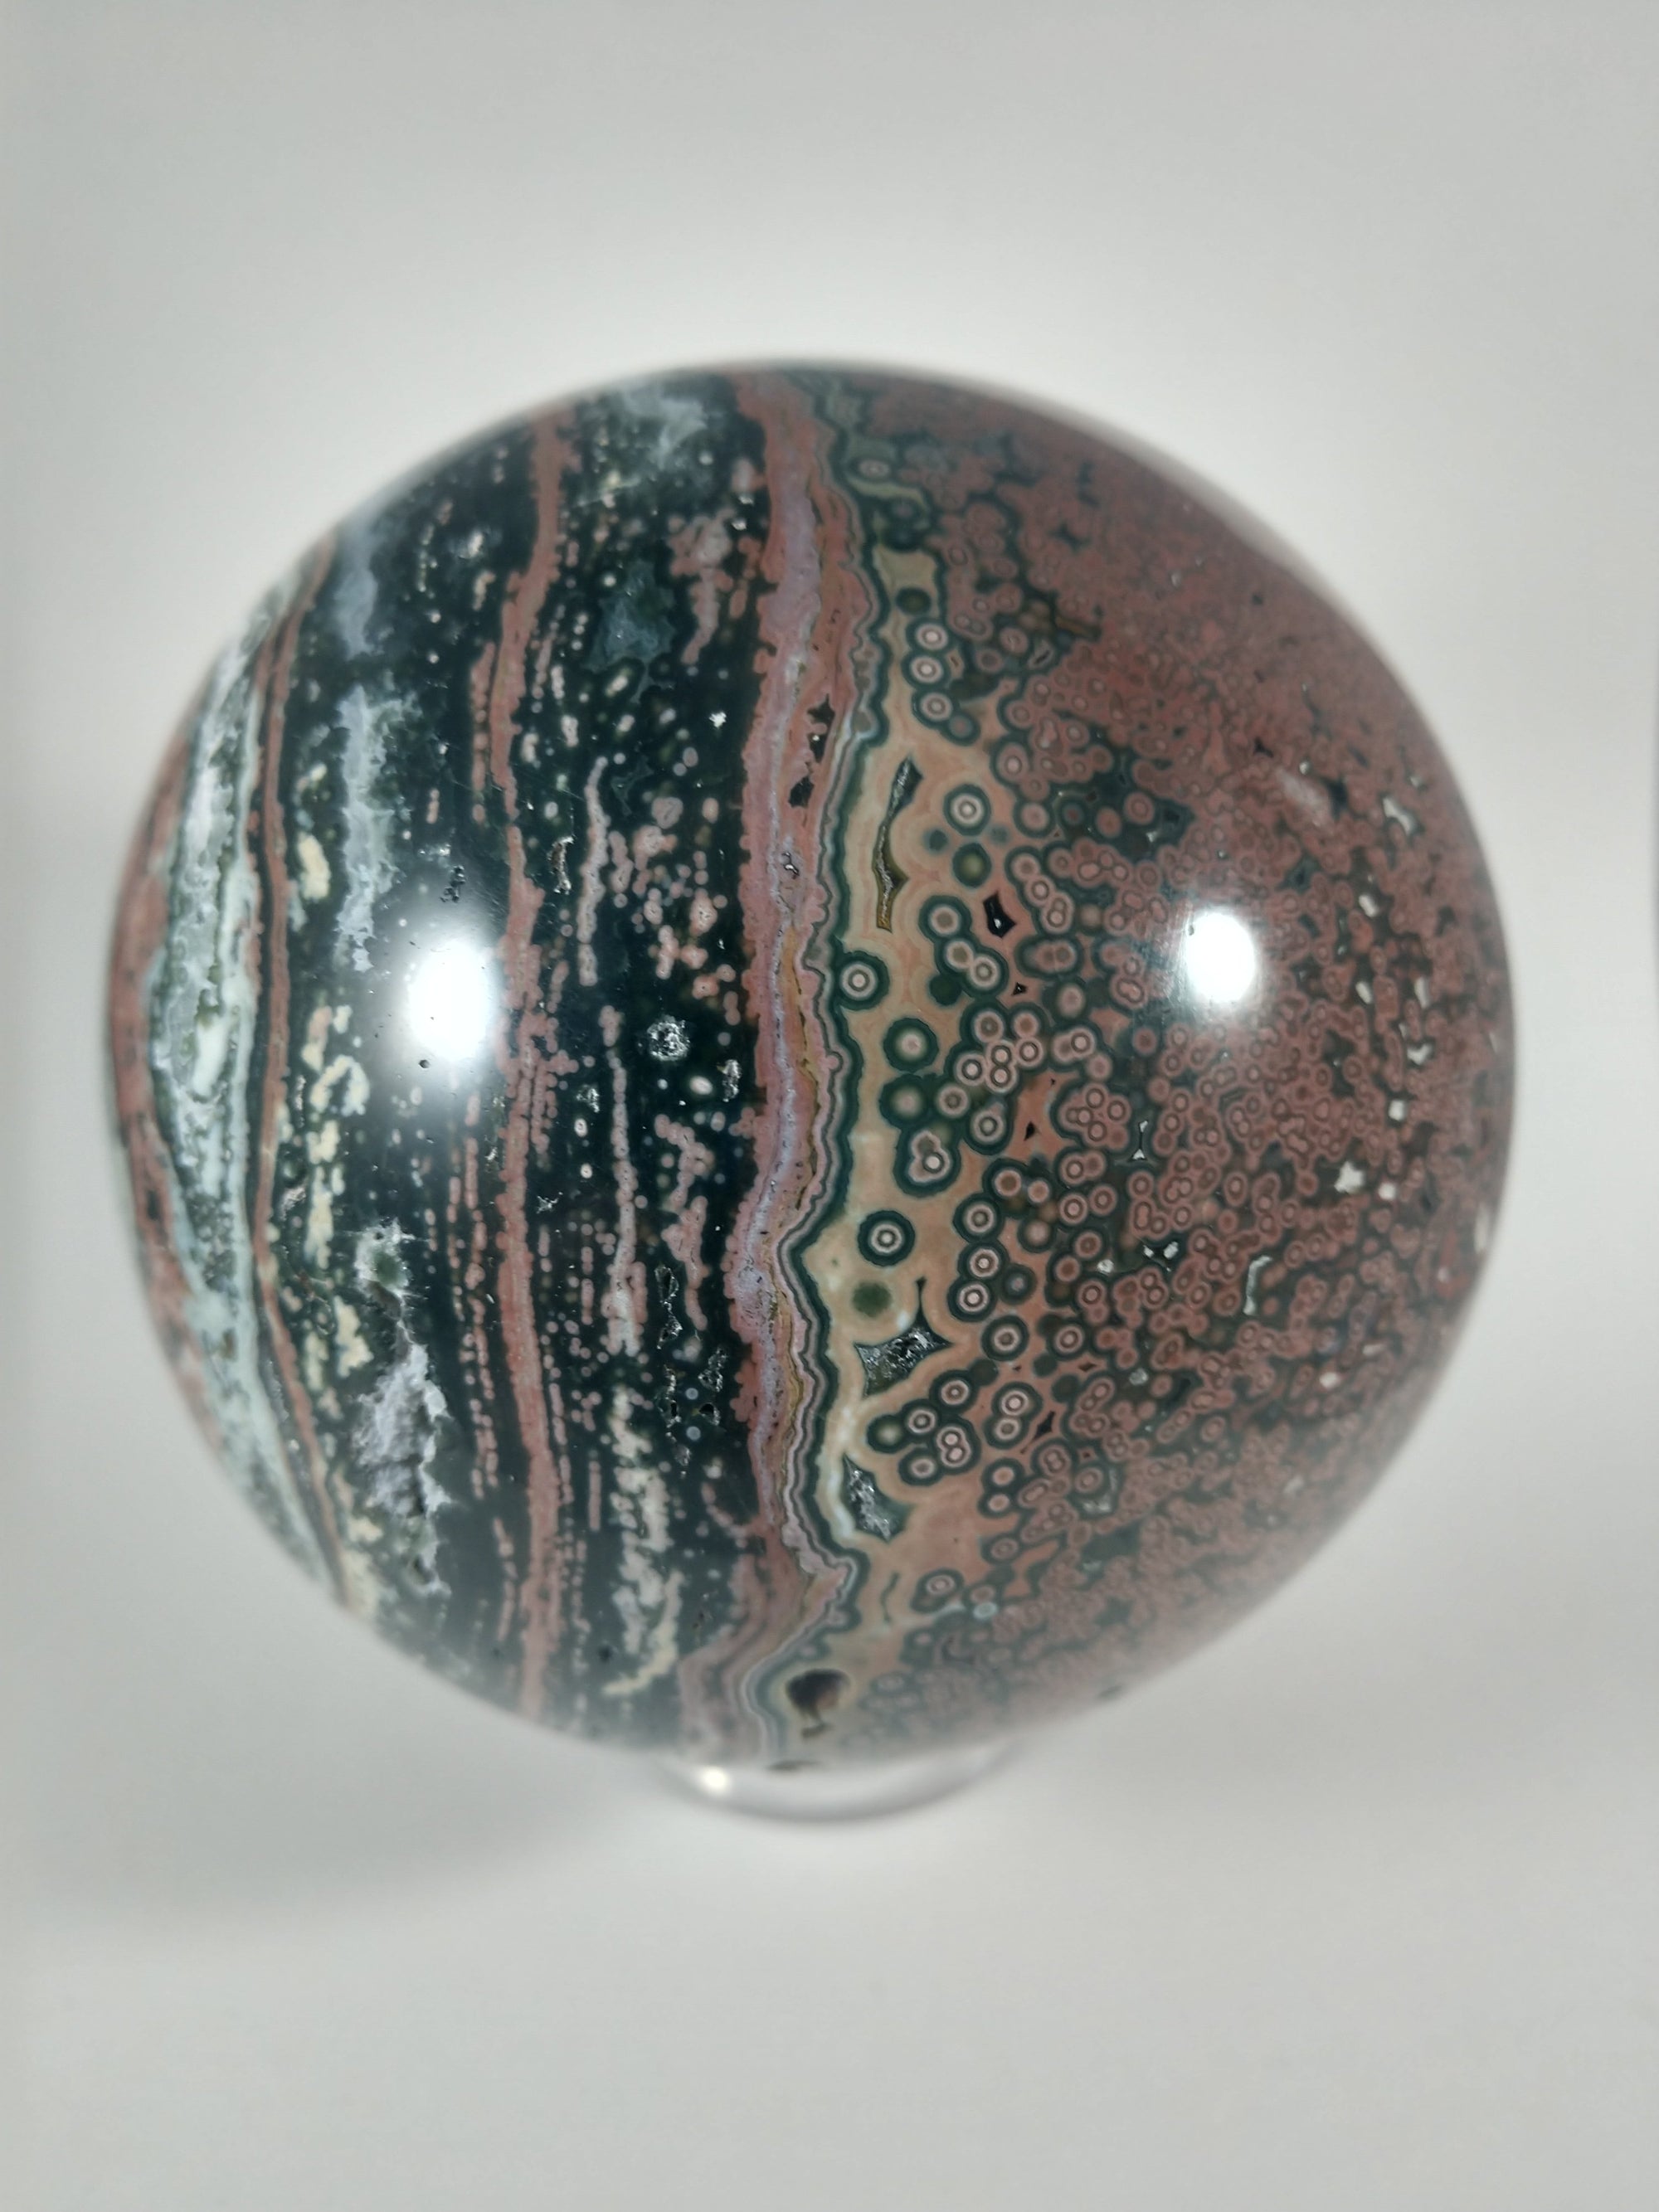 Ocean Jasper Sphere, 2.37 lbs.